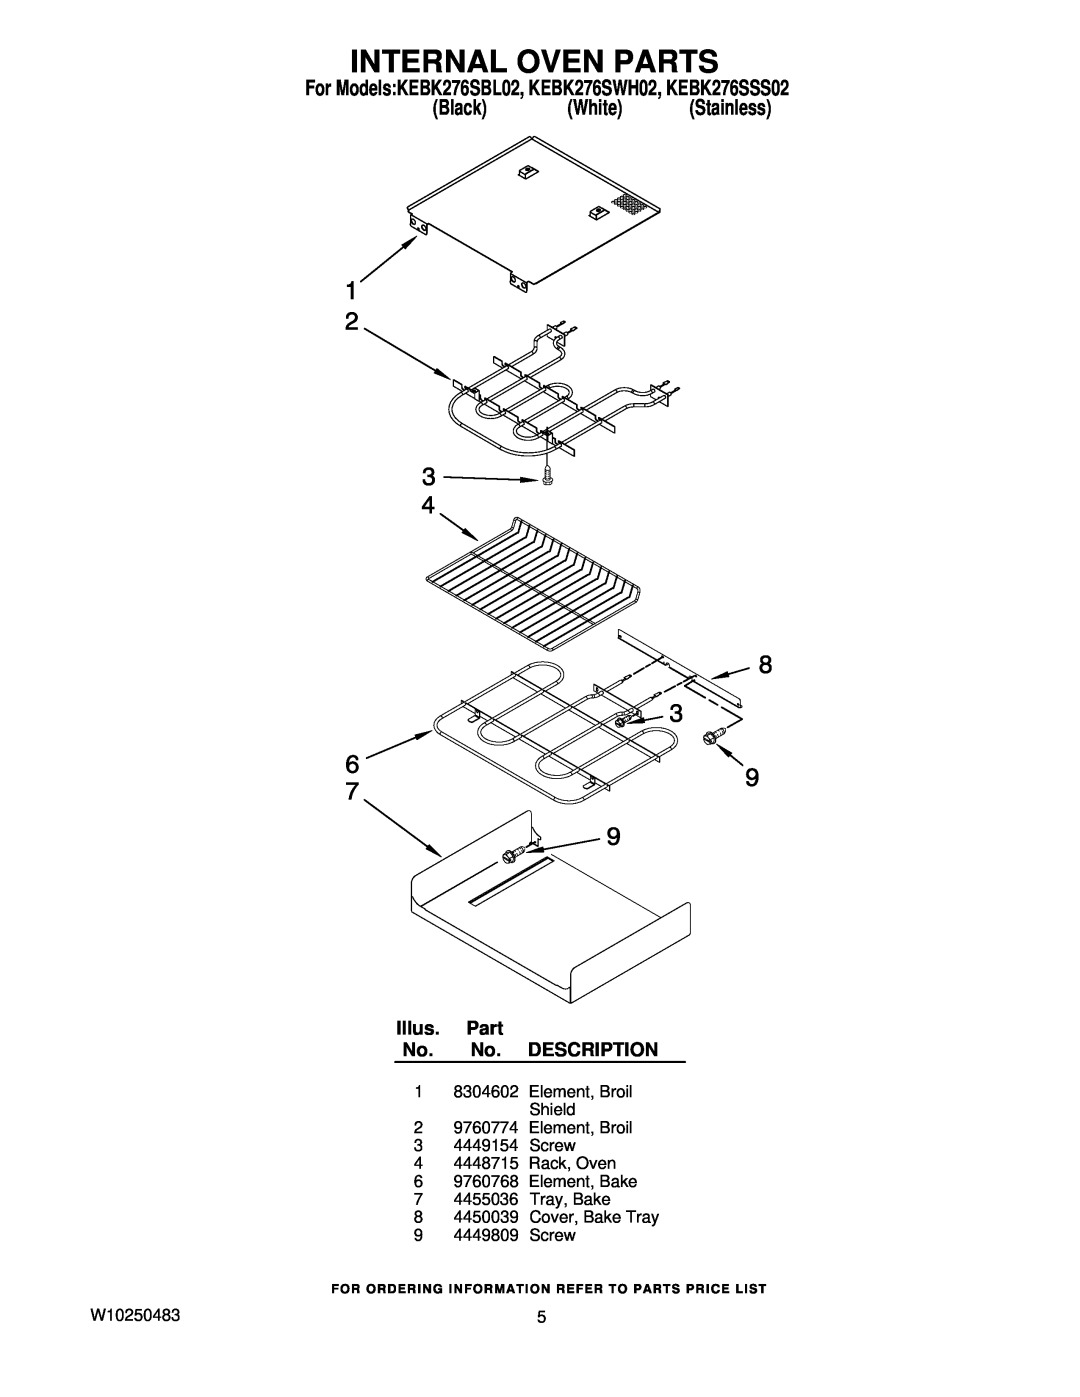 KitchenAid manual Internal Oven Parts, For ModelsKEBK276SBL02, KEBK276SWH02, KEBK276SSS02, Black White Stainless 